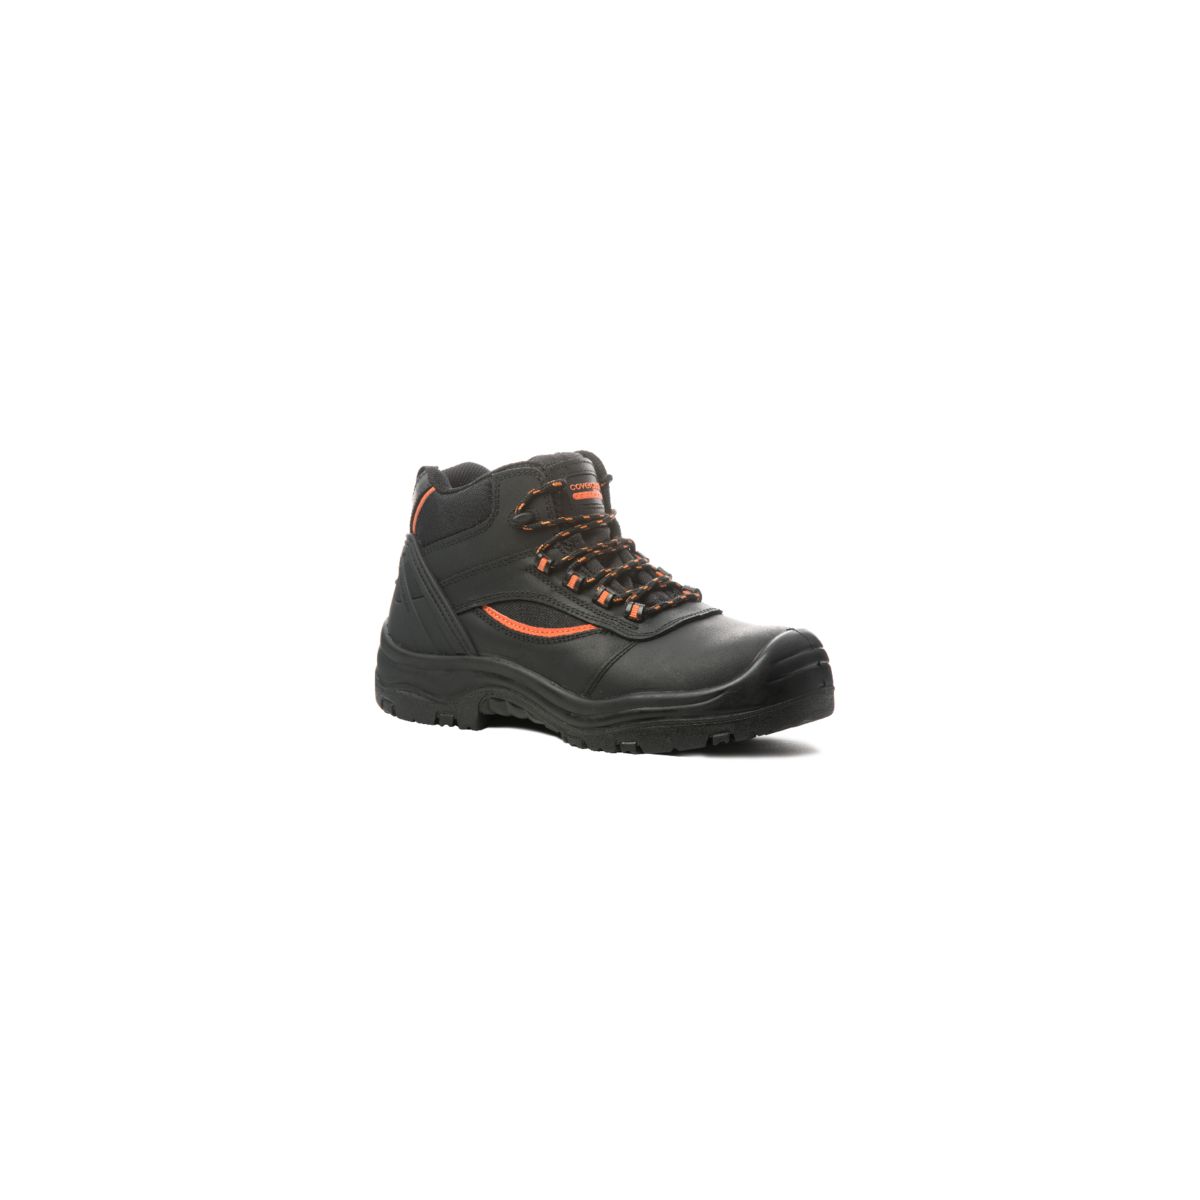 Chaussure de sécurité PEARL HIGH haute noire S3 SRC - COVERGUARD - Taille 38 0